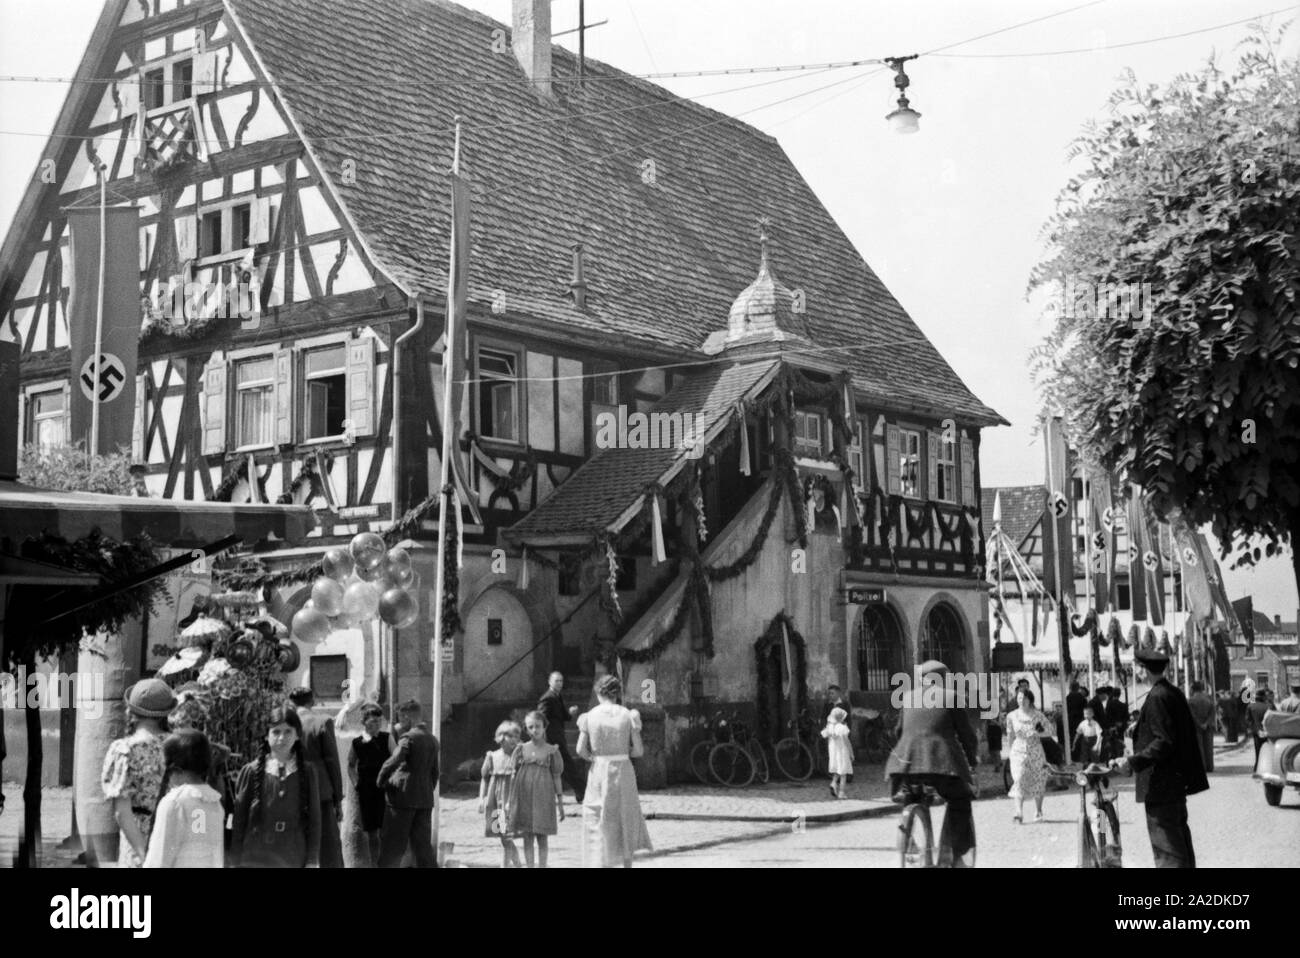 Das ist zum Rathaus geschmückt dans Rettichfest Schifferstadt, Deutschland 1930 er Jahre. L'hôtel de ville est décoré pour le radis annuel juste à Schifferstadt, Allemagne 1930. Banque D'Images